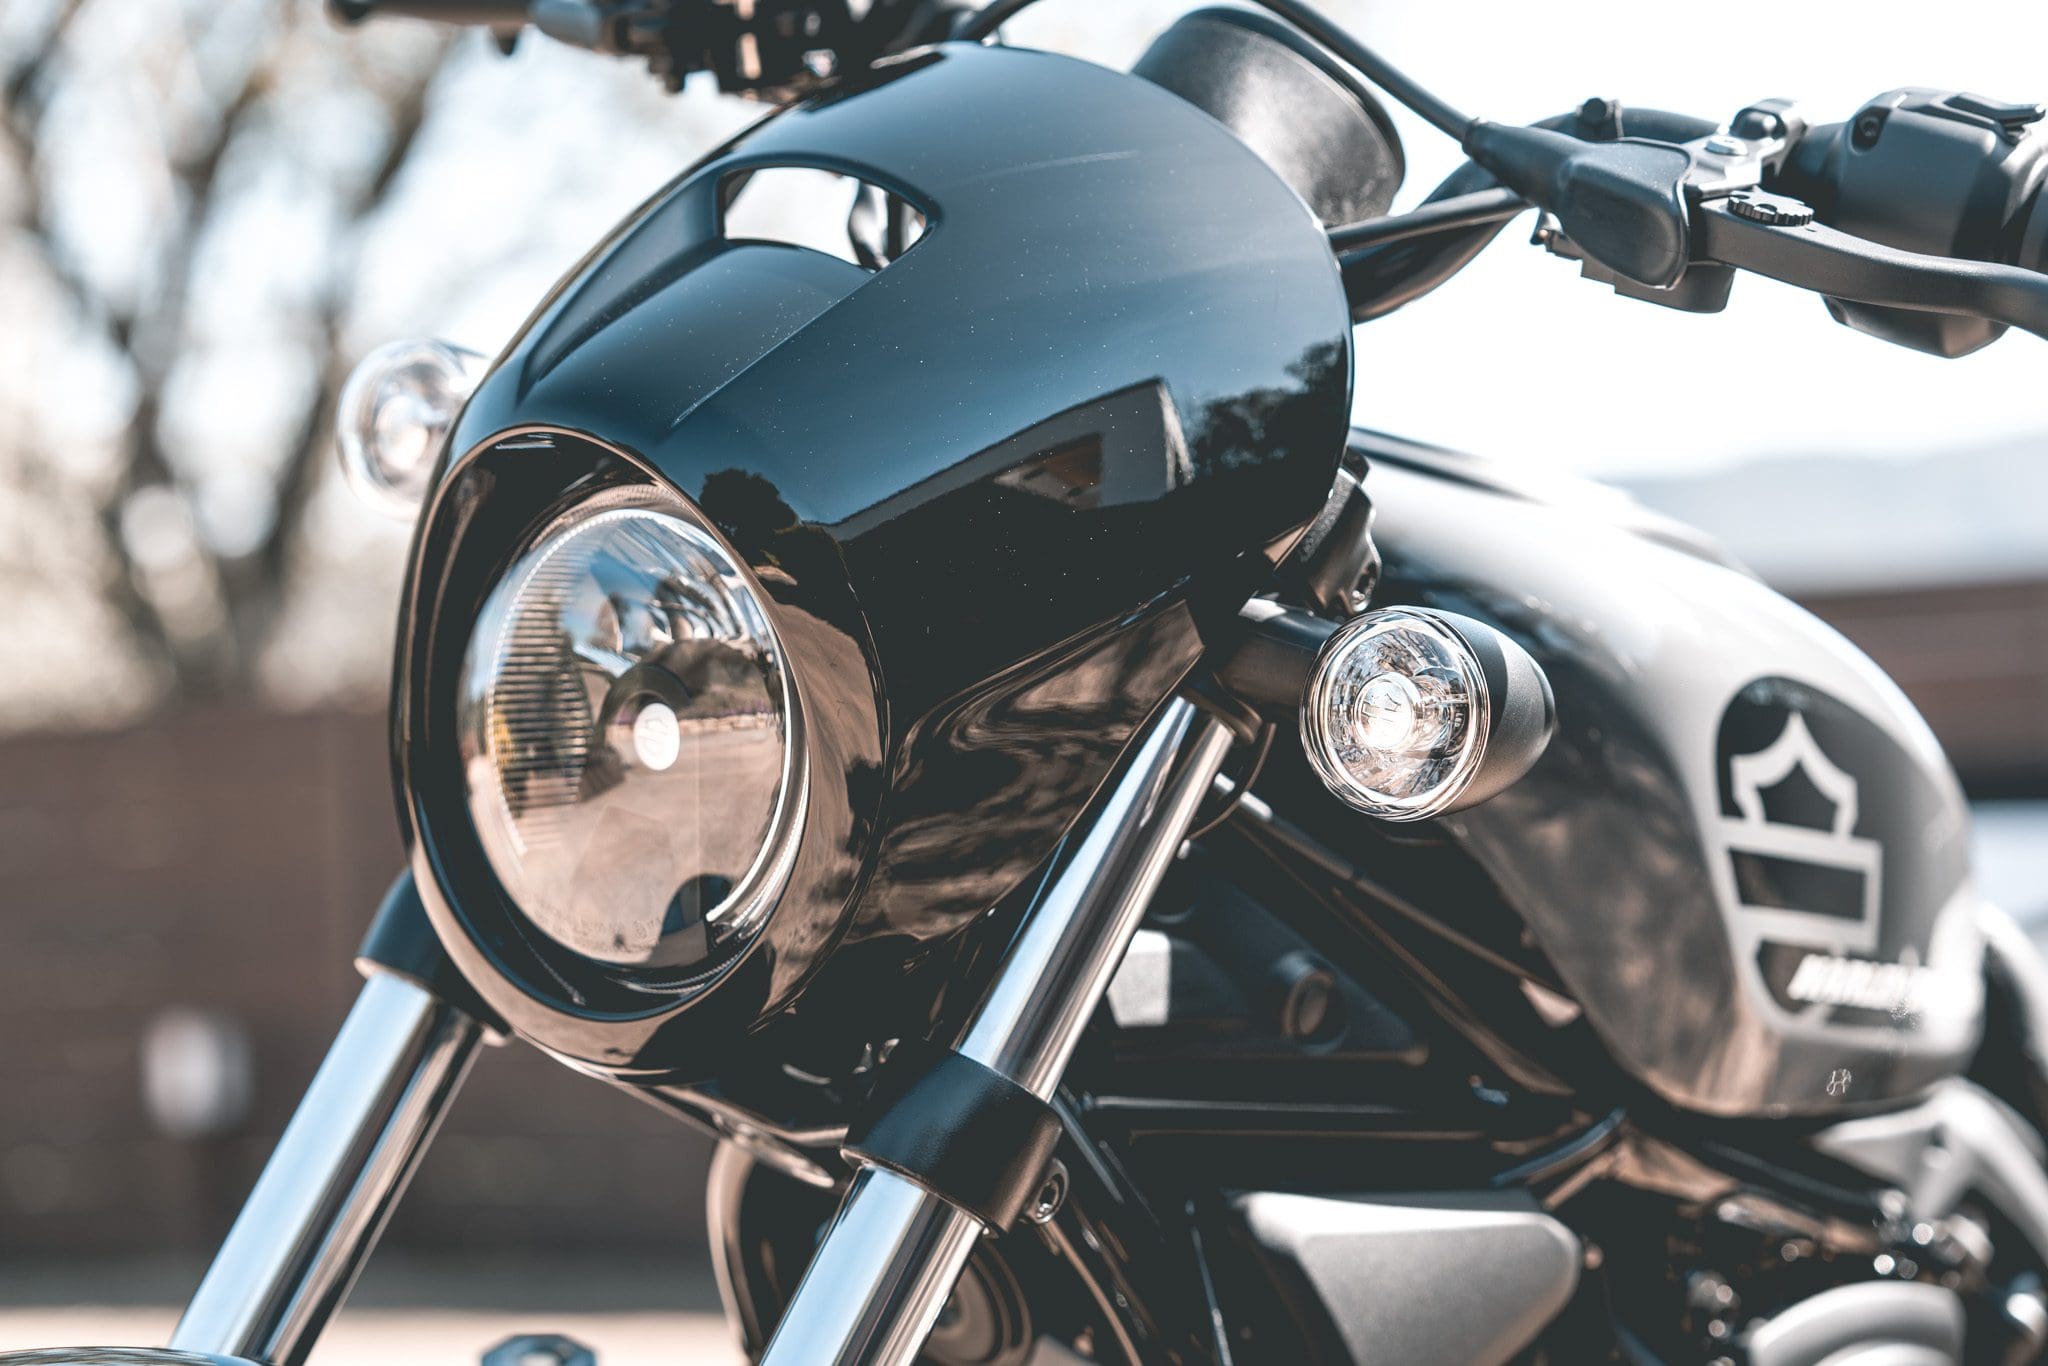 2022 Harley Davidson modellen, We voelen de nieuwe 2022 Harley-Davidson modellen letterlijk aan de tand(wielen)